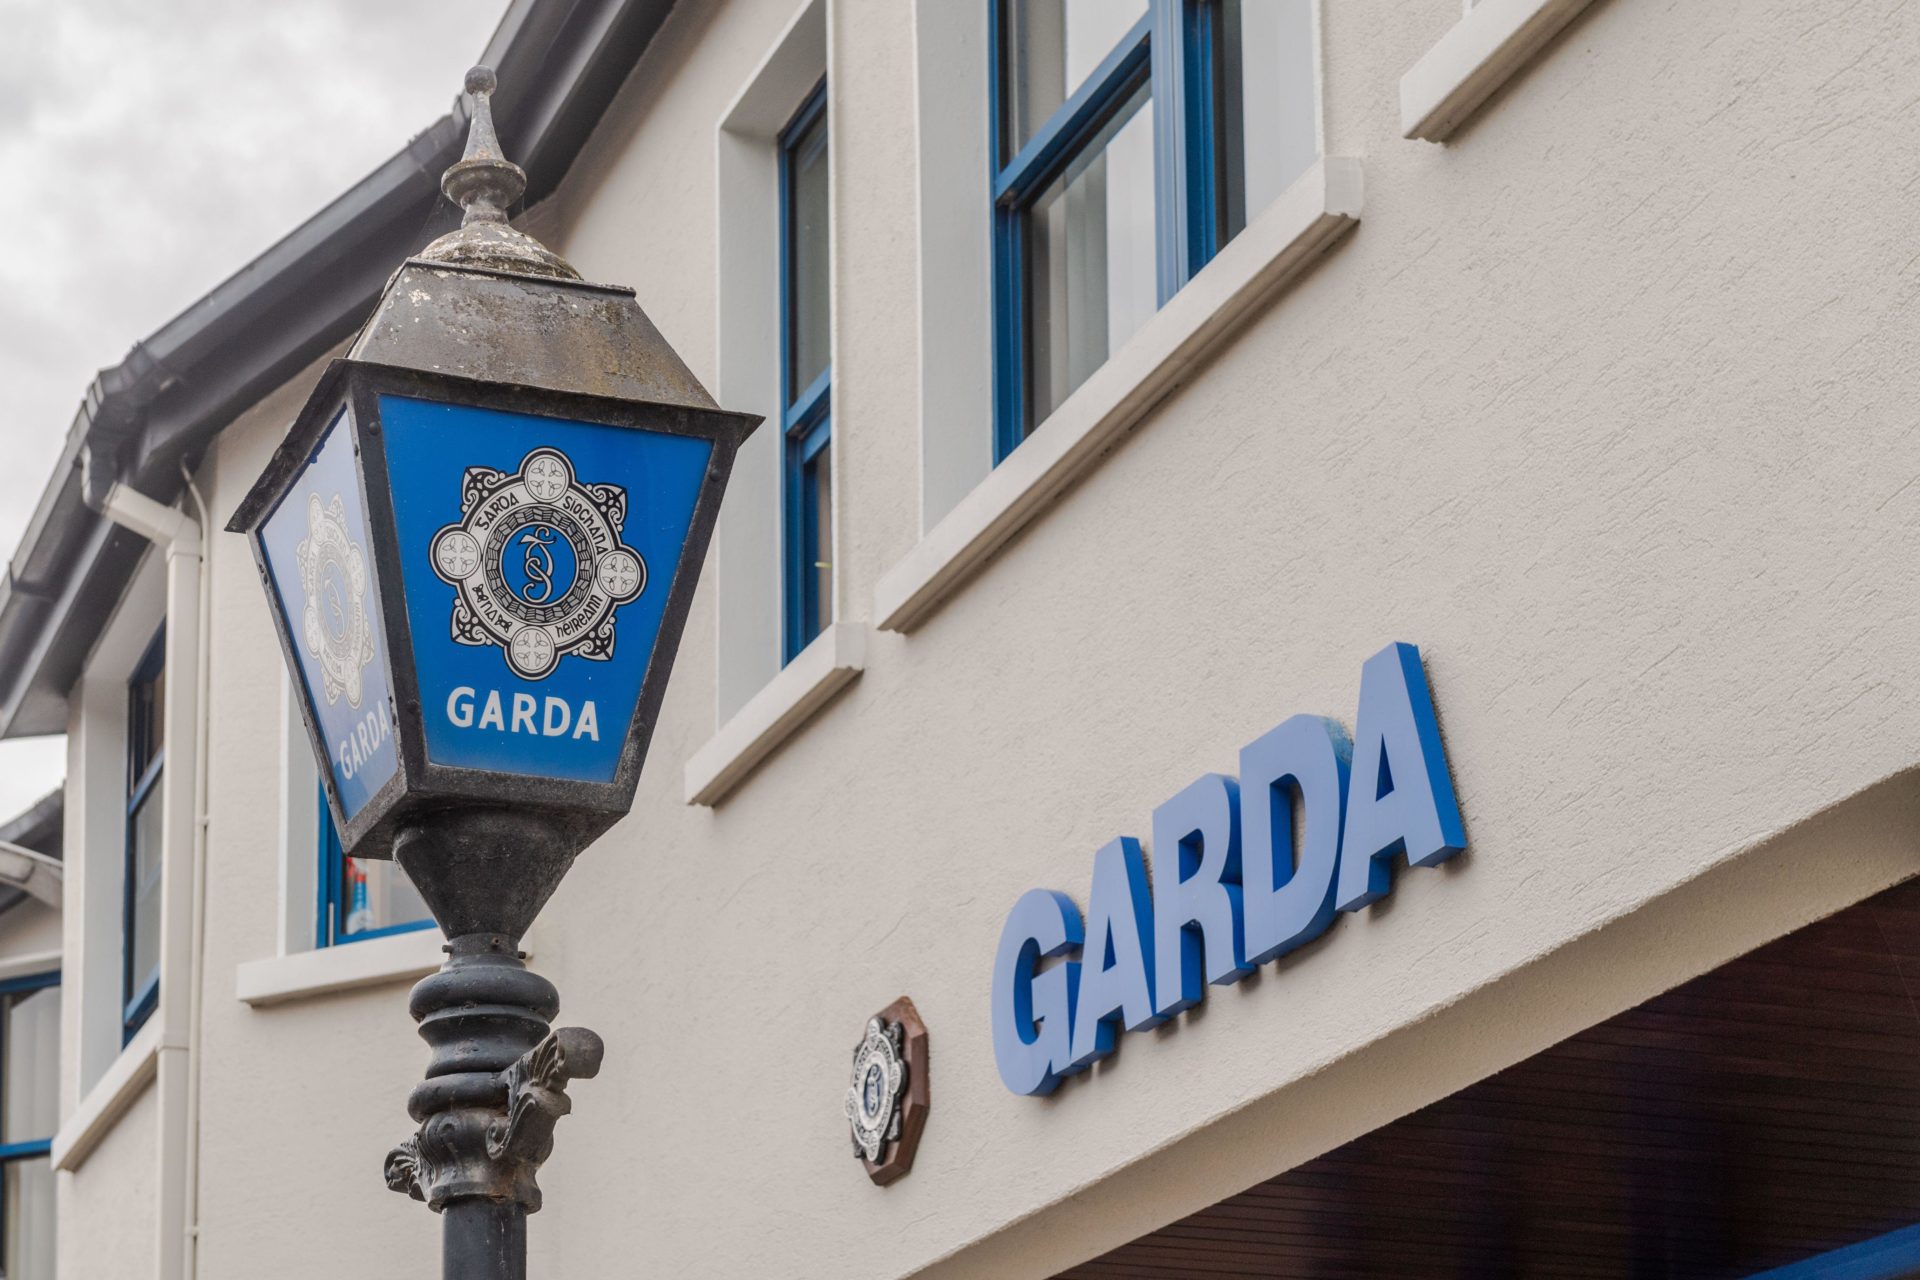 Man dies in single-vehicle crash in County Cork